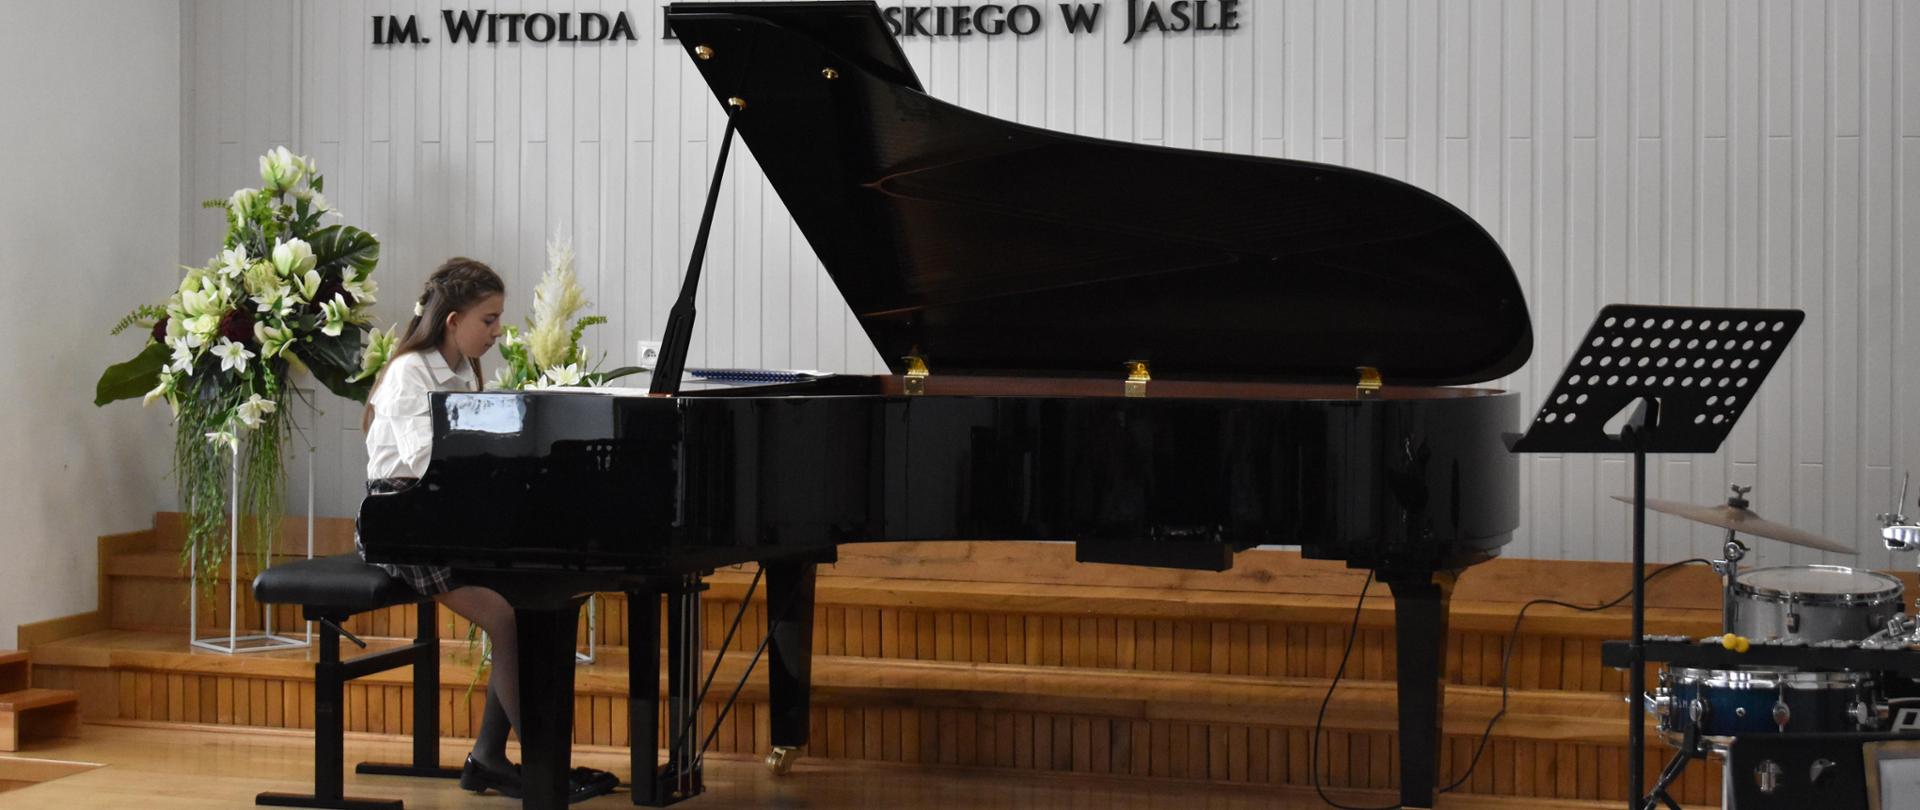 na zdjęciu, w auli PSM, podczas koncertu w trakcie Dni Otwartych PSM I st. w Jaśle widnieje uczennica grająca na fortepianie. Kolorystyka zdjęcia jest biało-brązowo-zielono-czerwono-czarna.